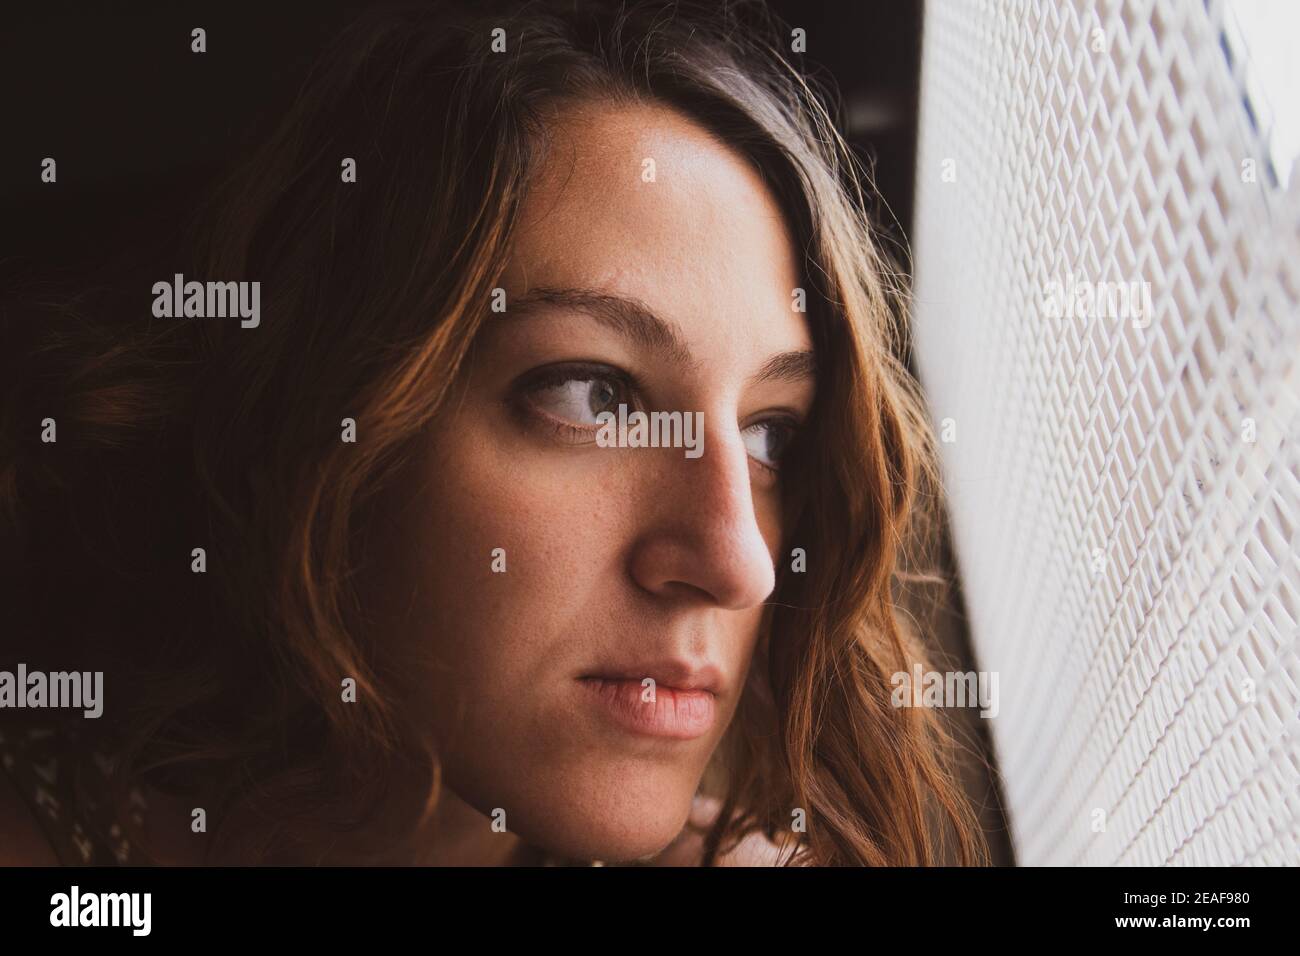 Traurige junge Frau, die aus dem Fenster schaute. Einengung in Zeiten des Coronavirus. Wunsch nach Ausgehen Stockfoto